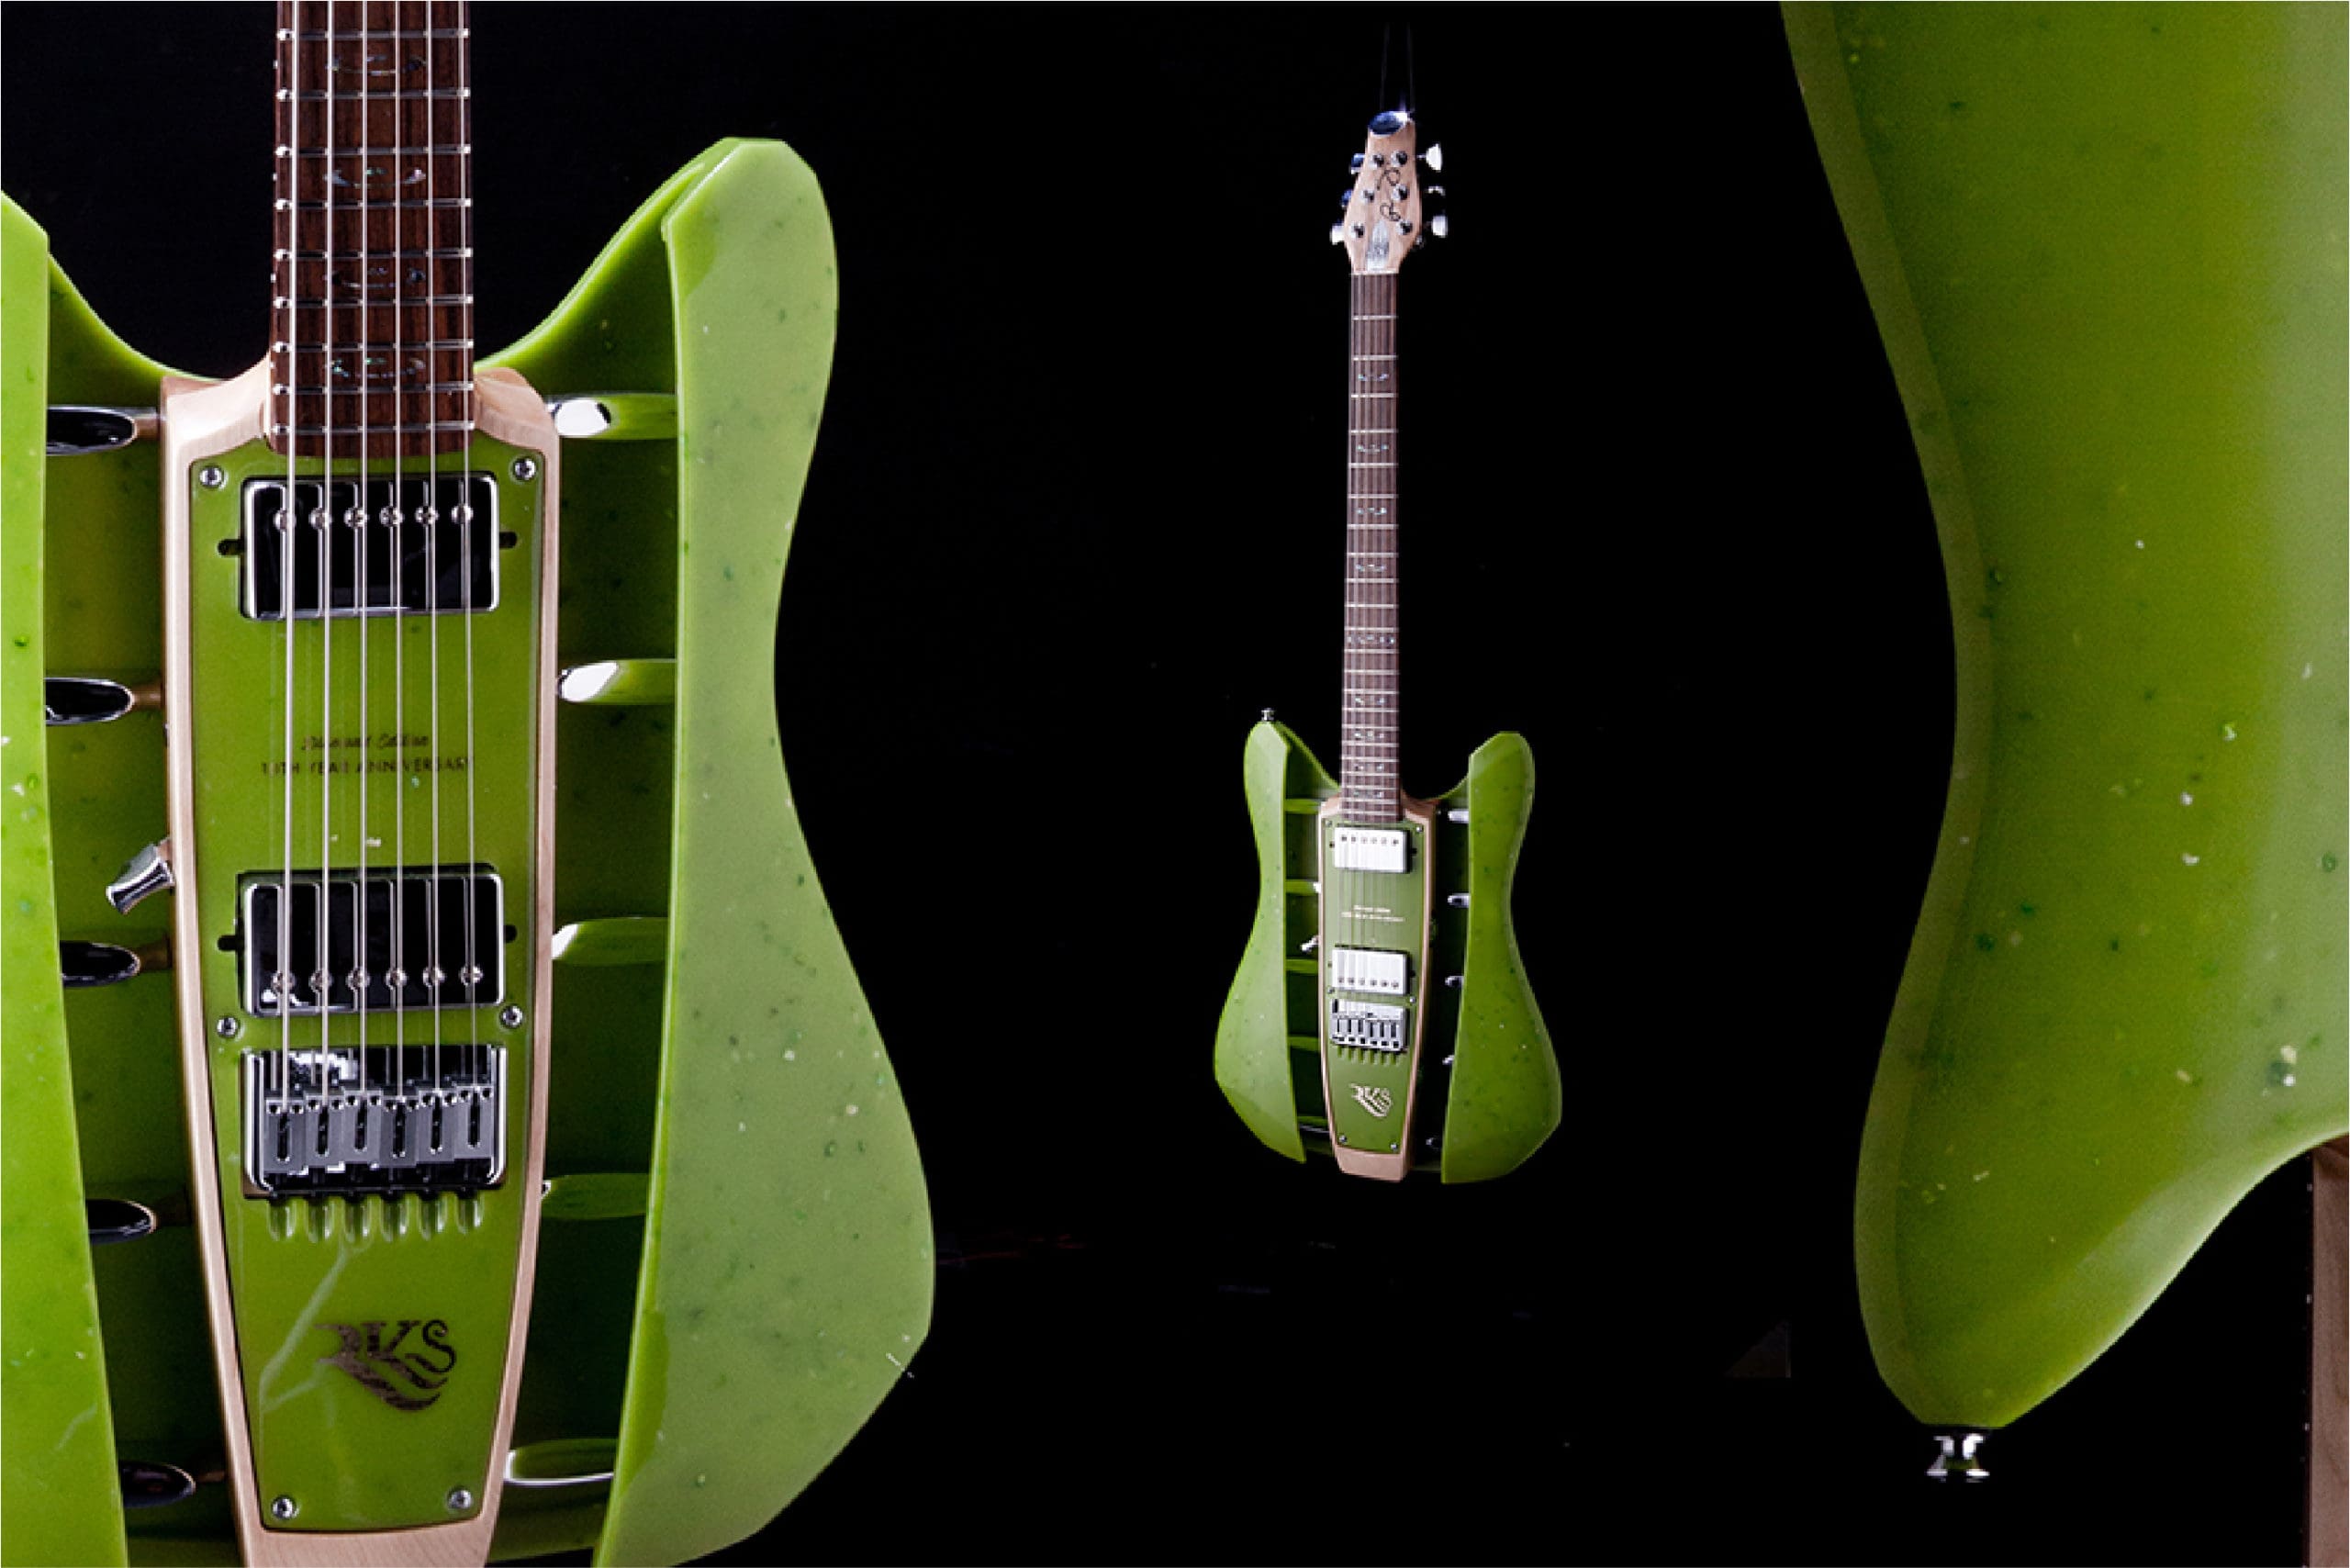 RKS Guitar in green